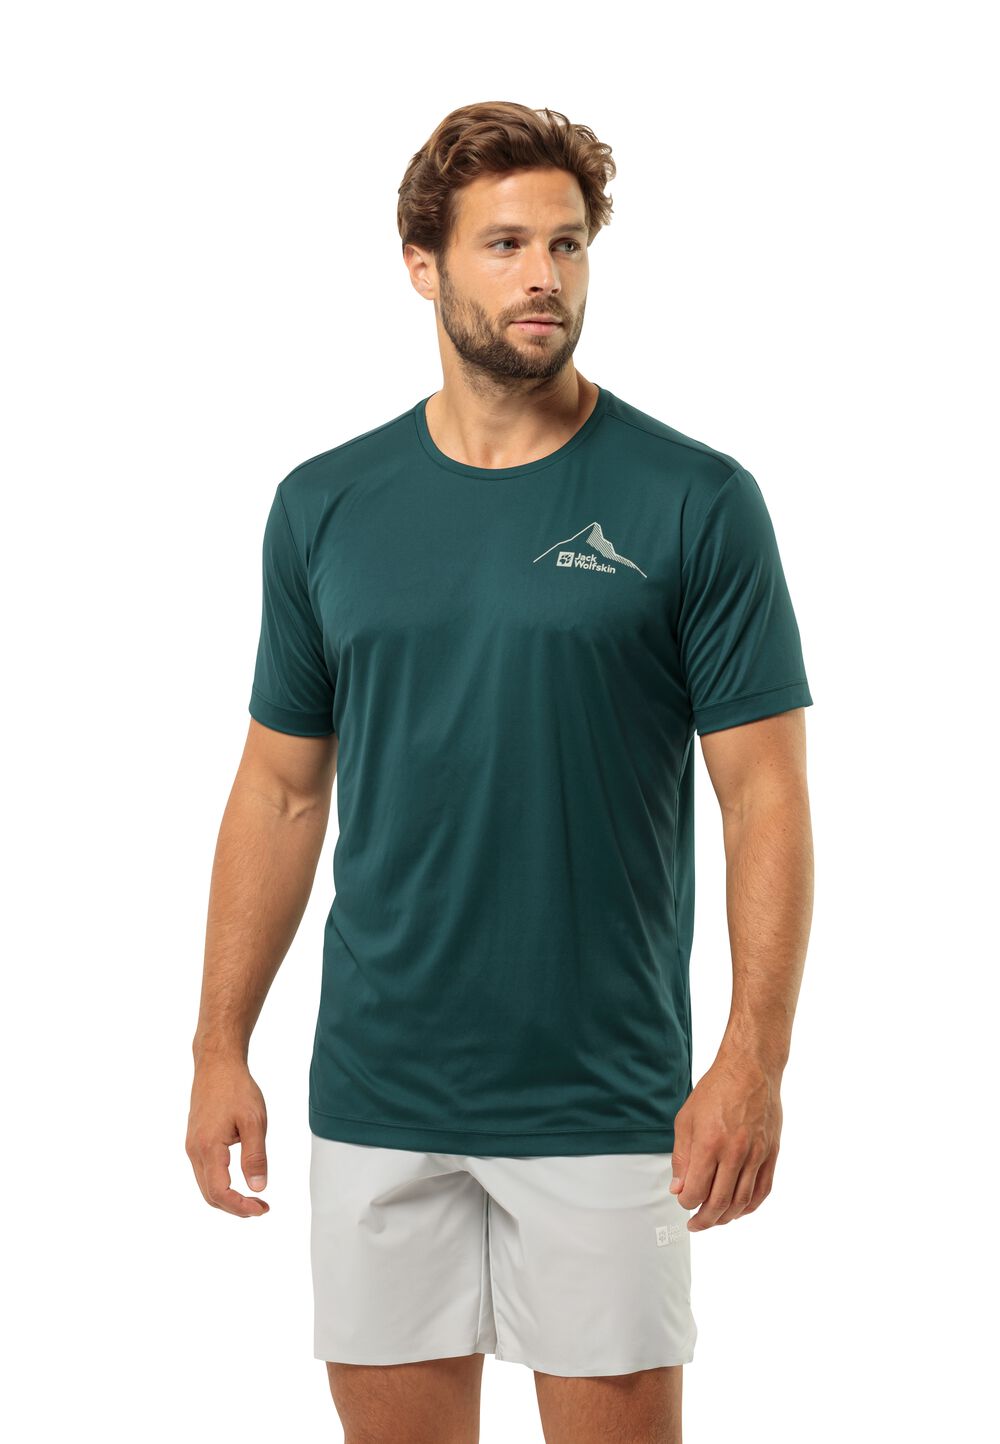 Jack Wolfskin Funktionsshirt Herren Peak Graphic T-Shirt Men S emerald emerald von Jack Wolfskin